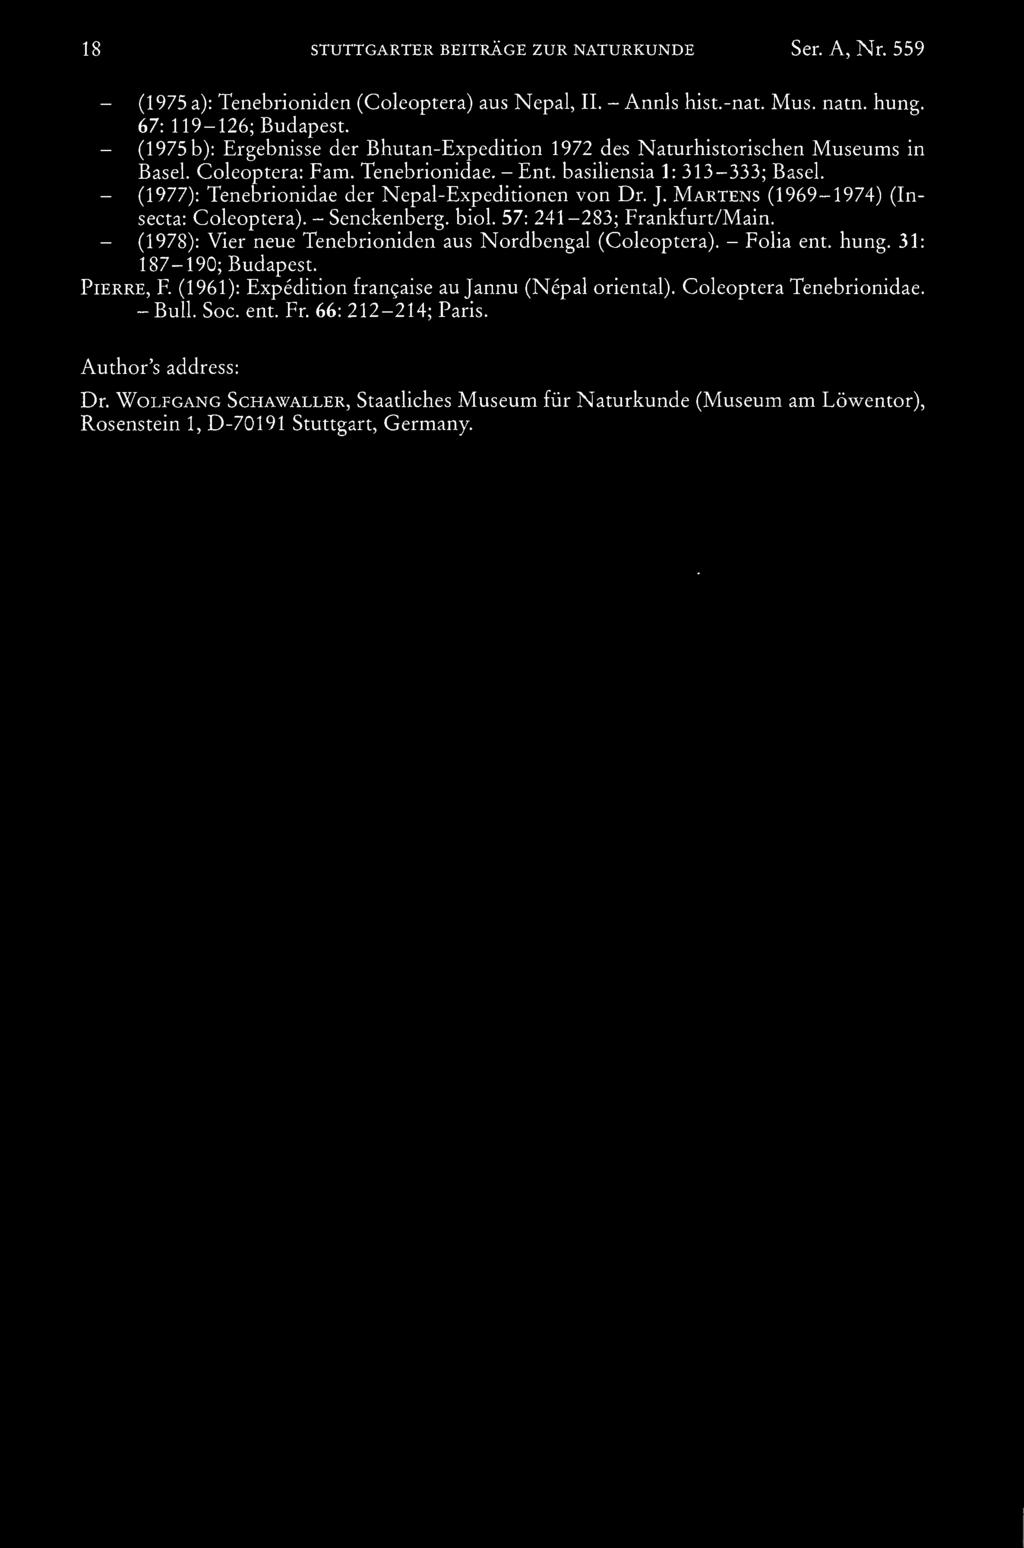 (1977): Tenebrionidae der Nepal-Expeditionen von Dr. J. Martens (1969-1974) (Insecta: Coleoptera). - Senckenberg. biol. 57: 241-283; Frankfurt/Main.